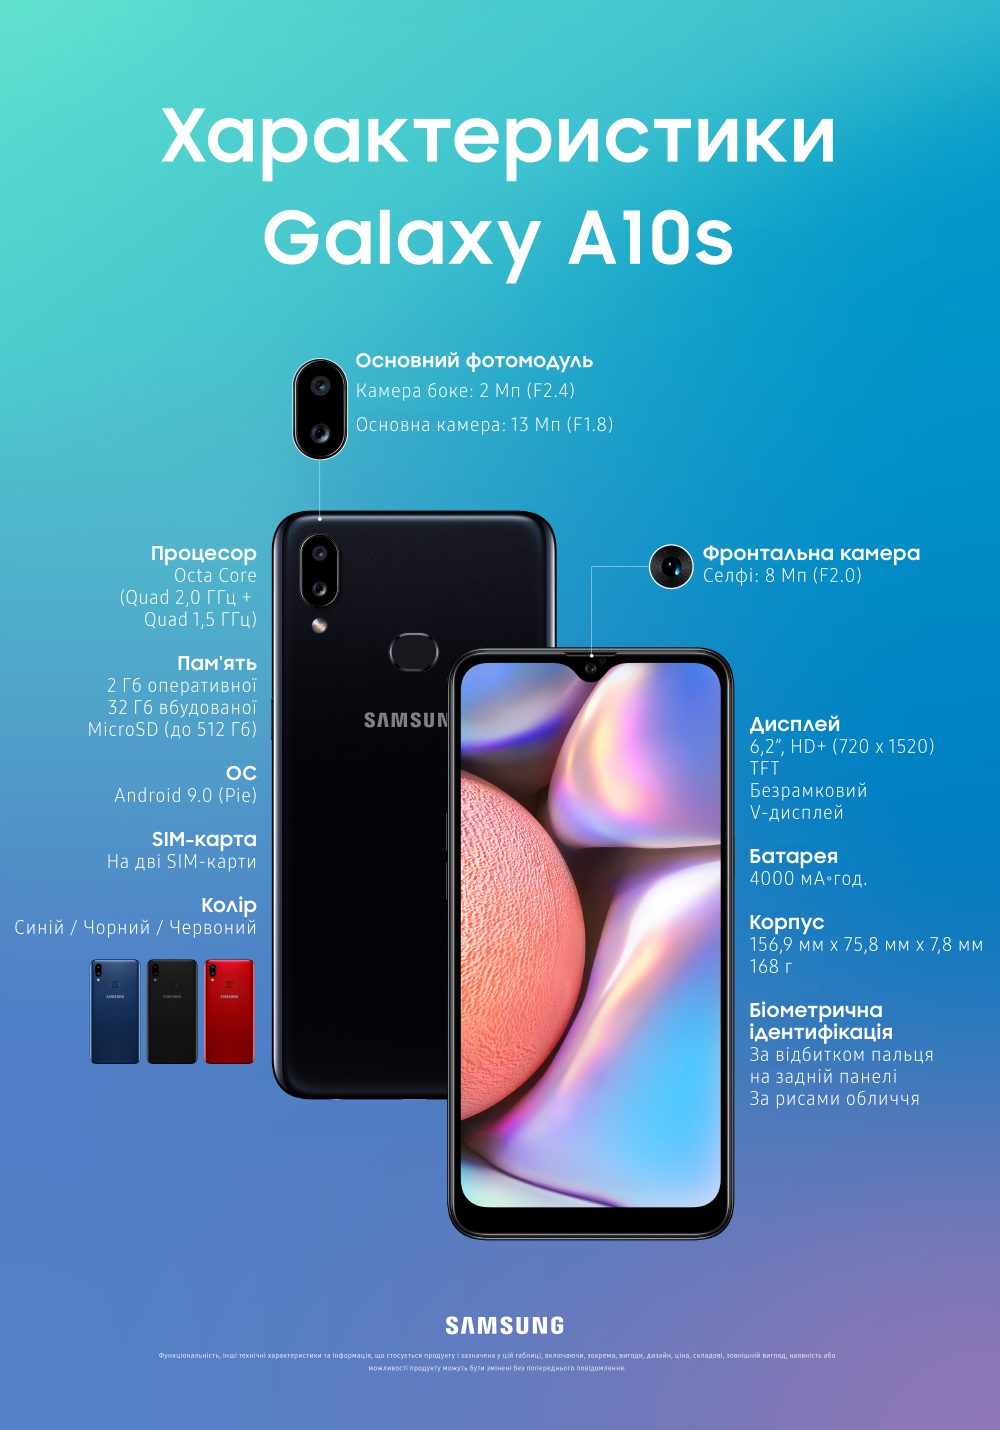 Раньше остального мира. Улучшенный бюджетник Samsung Galaxy A10s выходит в Украине по цене 3 999 грн